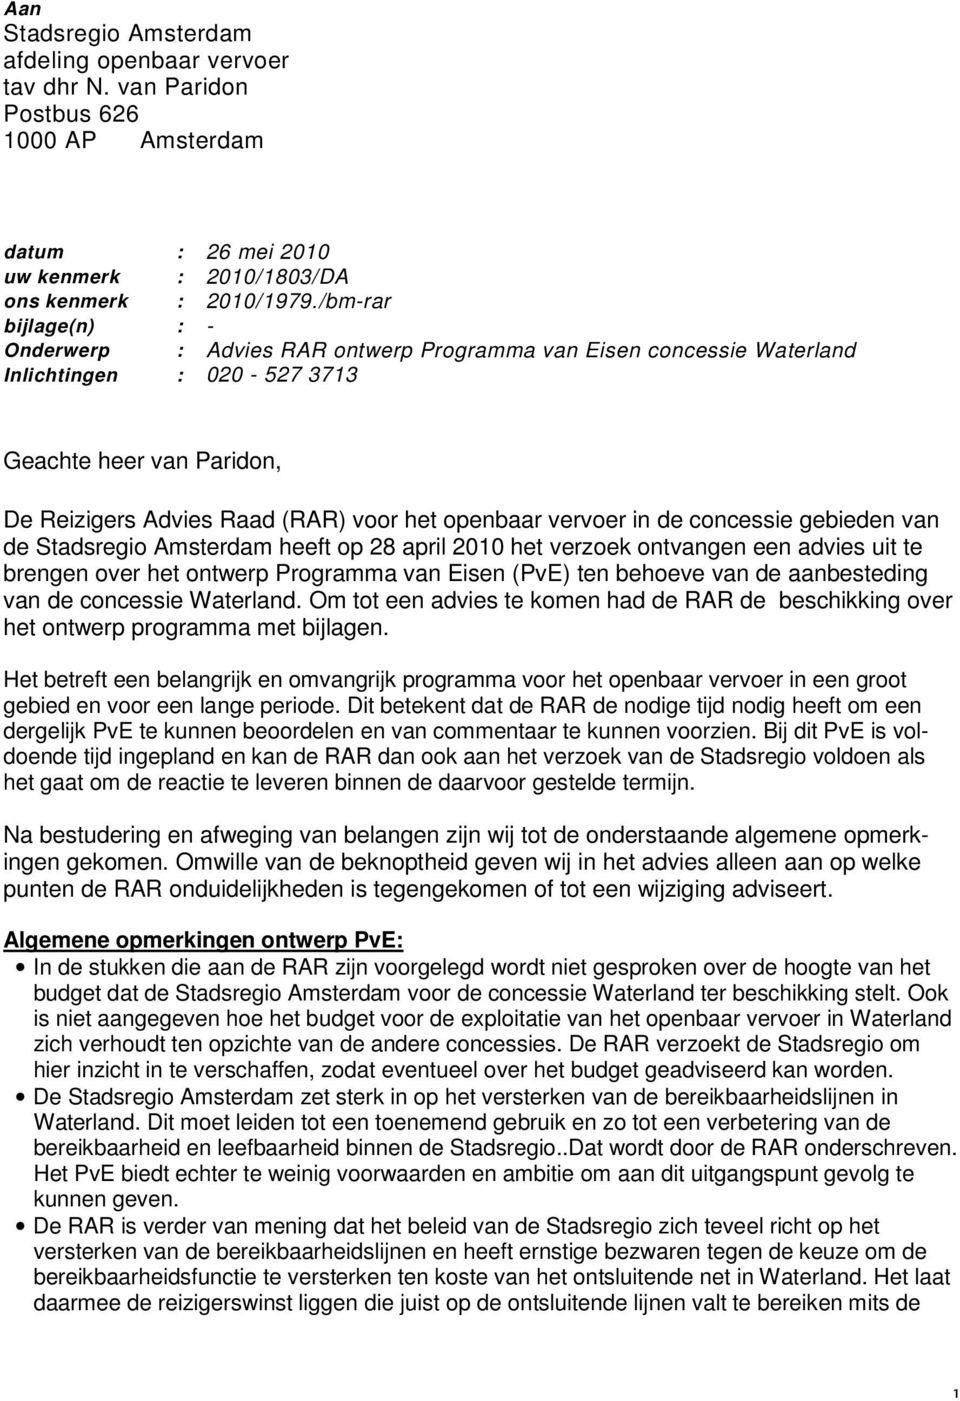 vervoer in de concessie gebieden van de Stadsregio Amsterdam heeft op 28 april 2010 het verzoek ontvangen een advies uit te brengen over het ontwerp Programma van Eisen (PvE) ten behoeve van de